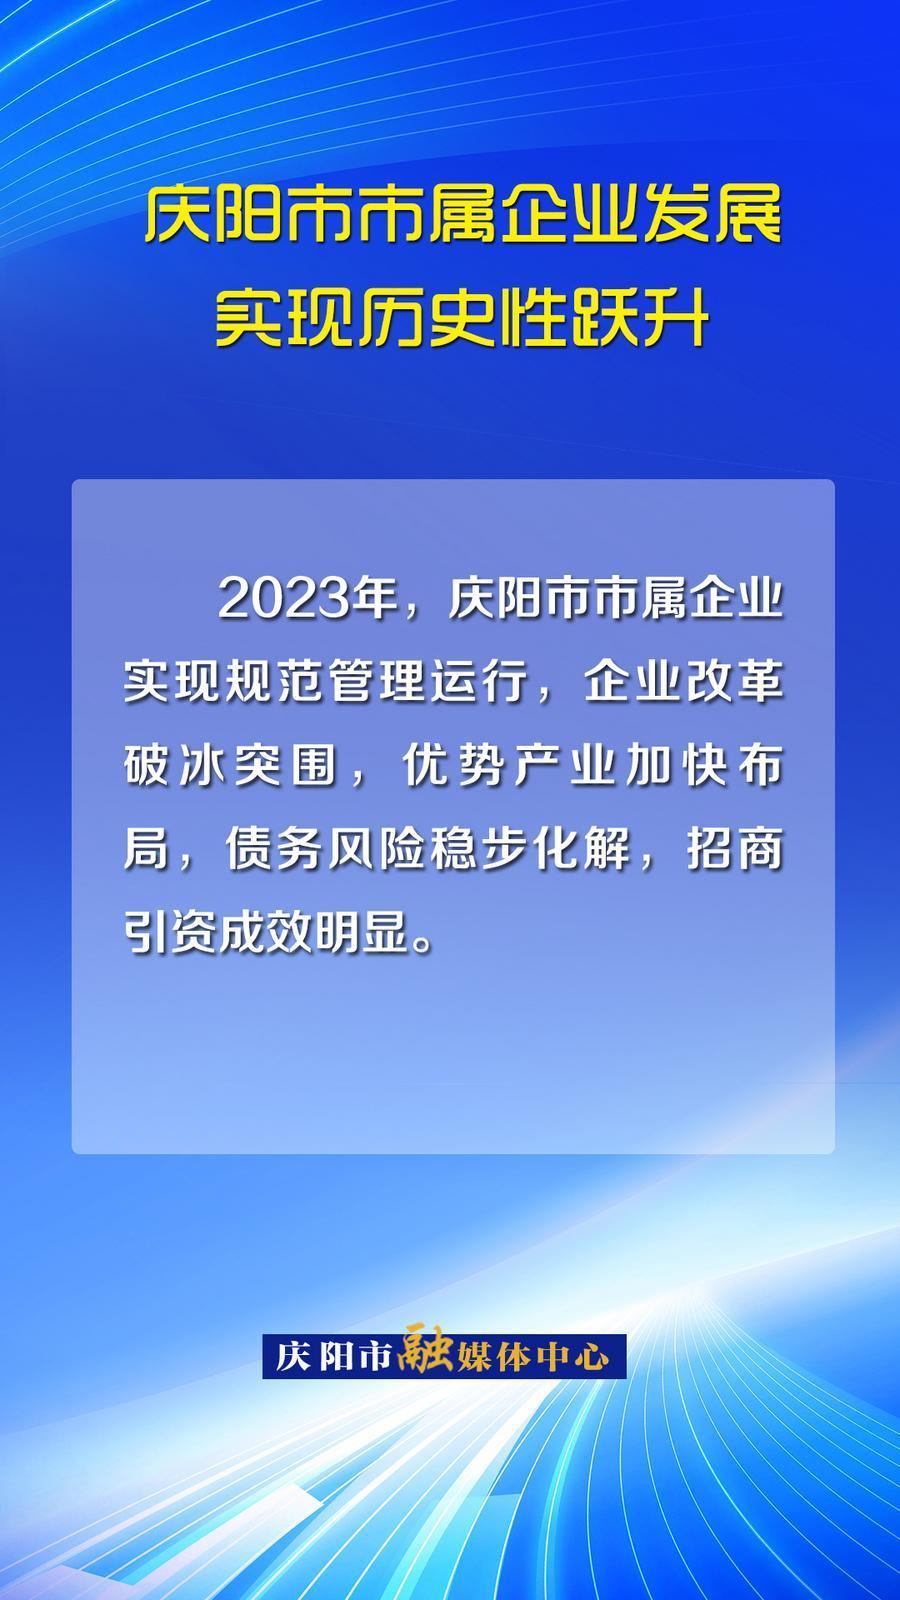 【海報】完成產值25.83億，資產總額達198.3億元！慶陽市市屬企業發展實現歷史性躍升